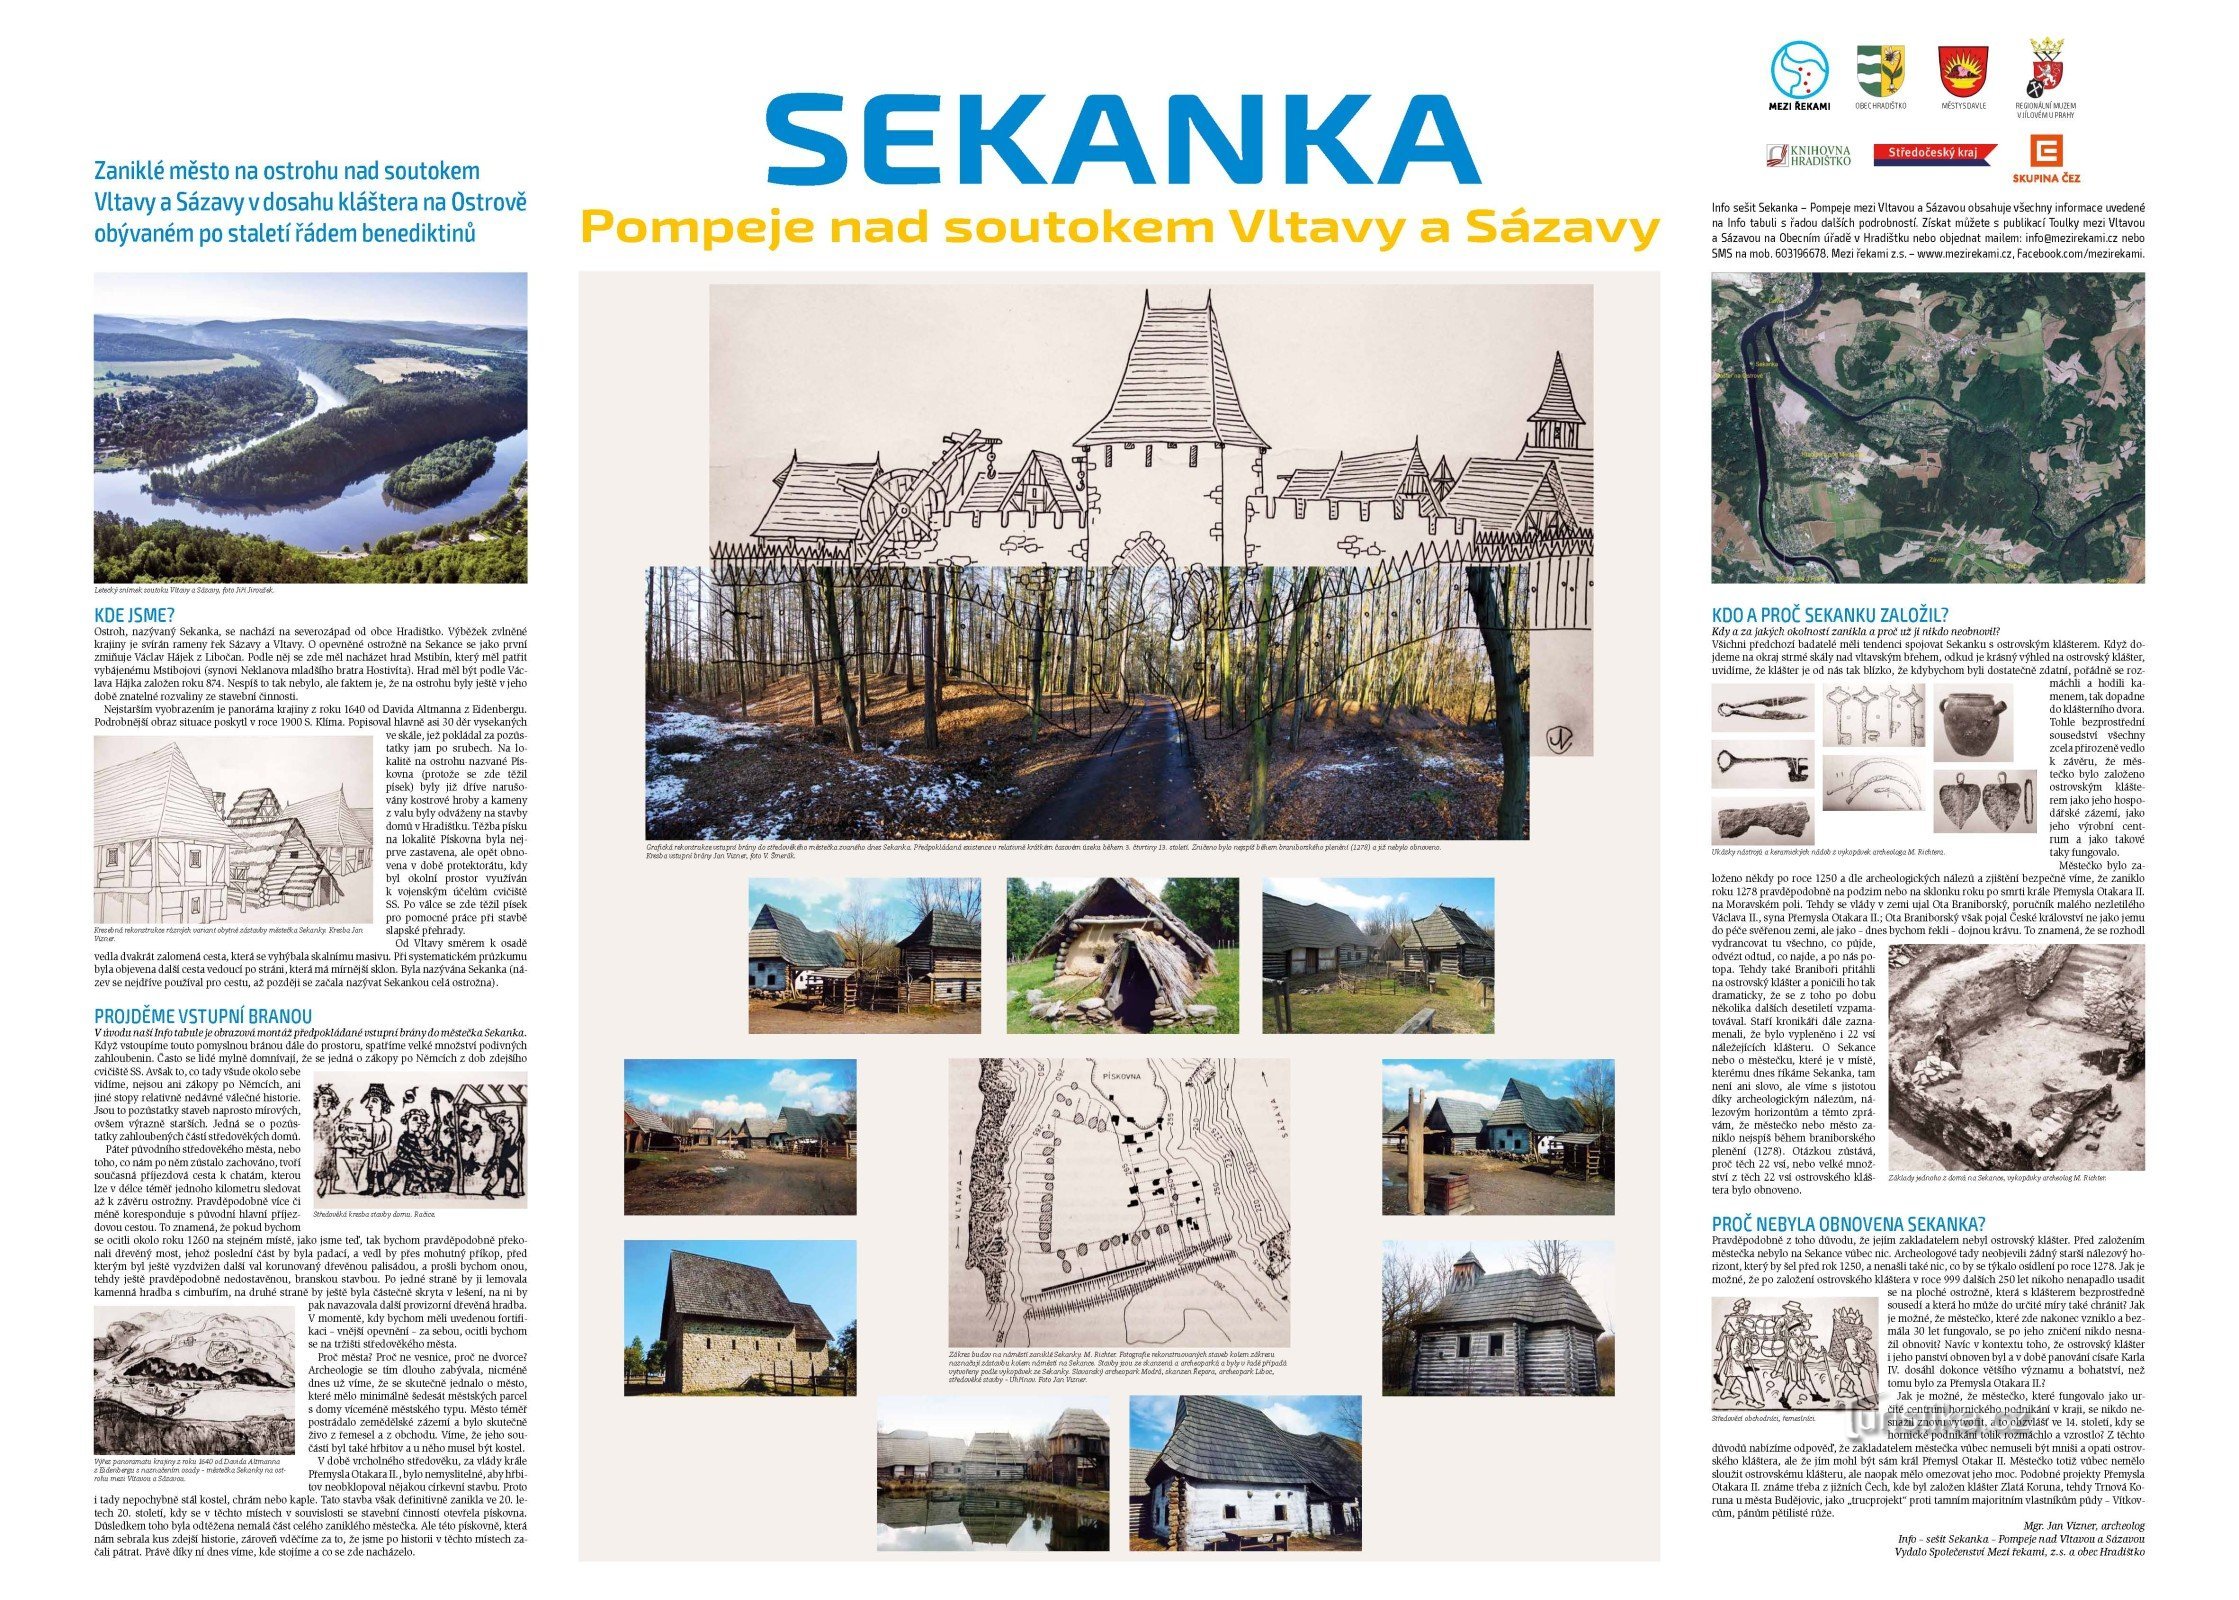 Painel de informações com a história de Sekanka